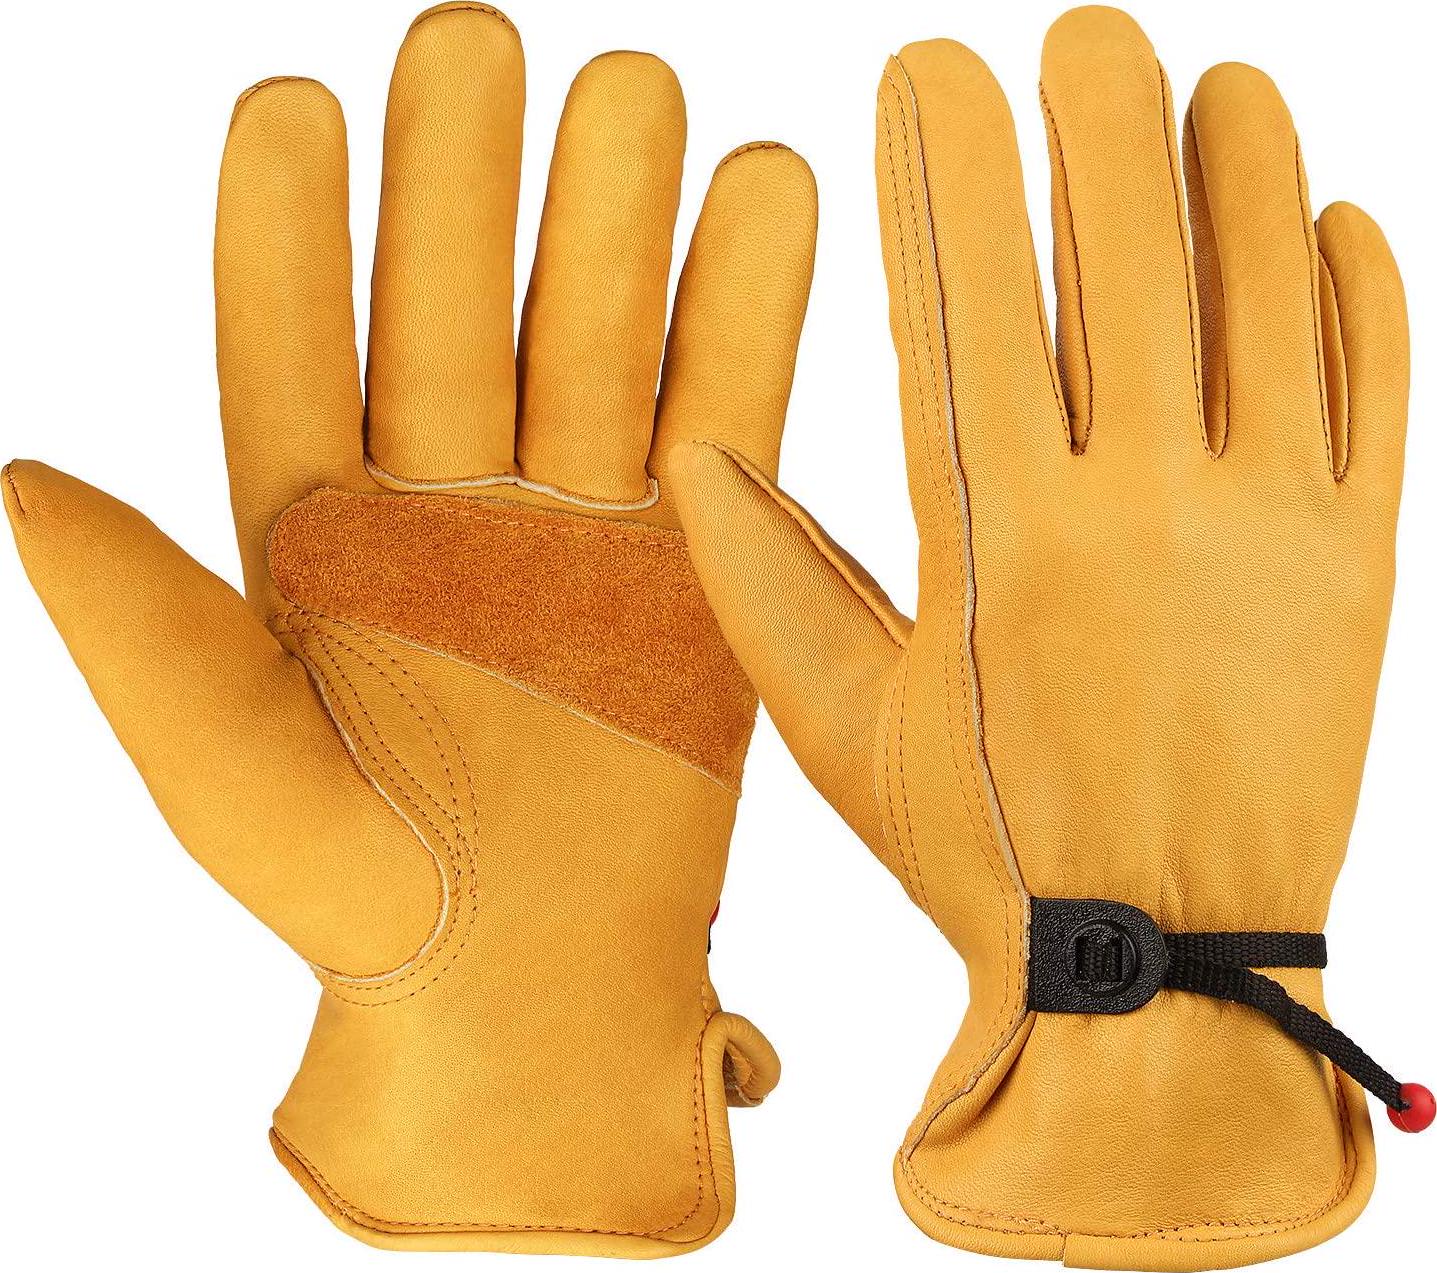 Leather Work Gloves Adjustable Wrist Tough Cowhide Garden Glove